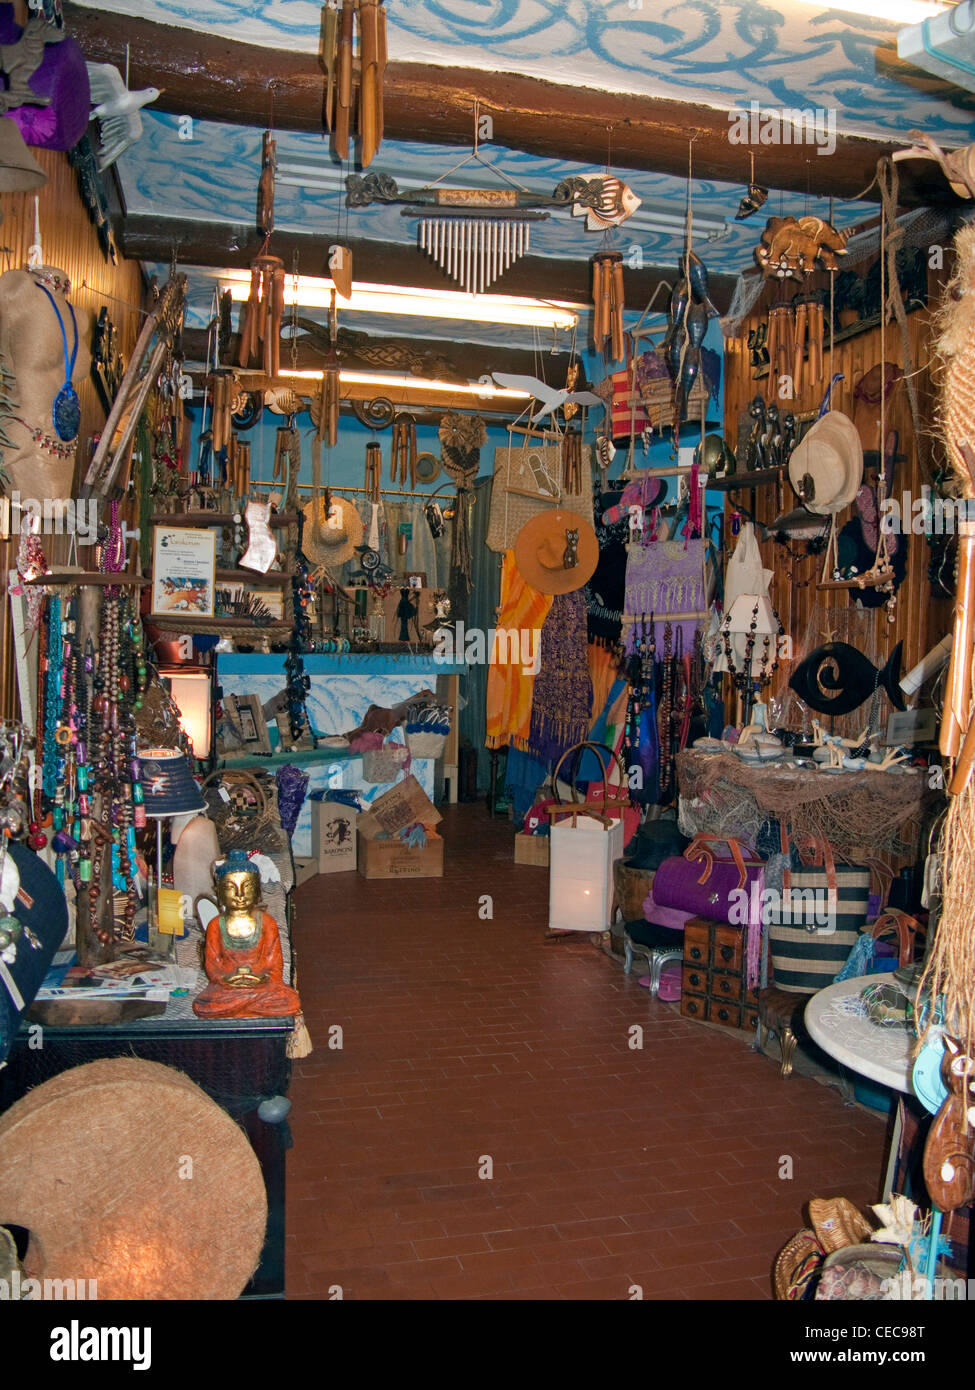 À l'intérieur d'une boutique de souvenirs à l'Harbour Village de pêcheurs de Camogli, province Genova, Liguria di Levante, Italie, Méditerranée, Europe Banque D'Images